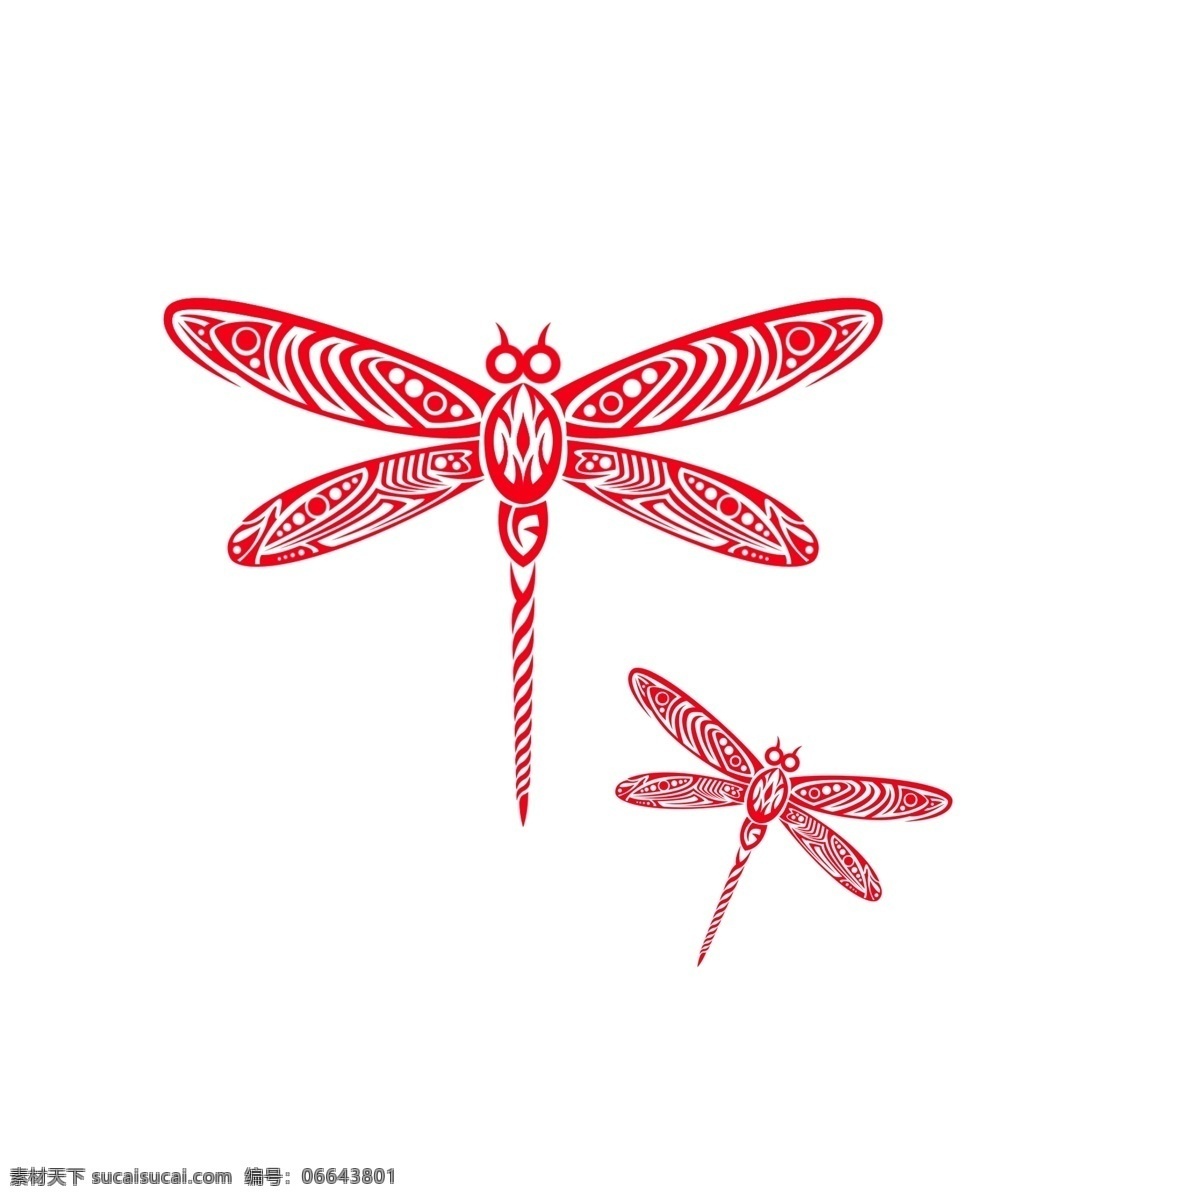 红色 中 国风 蜻蜓 剪纸 装饰 元素 中国风 中国风蜻蜓 装饰元素 蜻蜓剪纸 红色剪纸元素